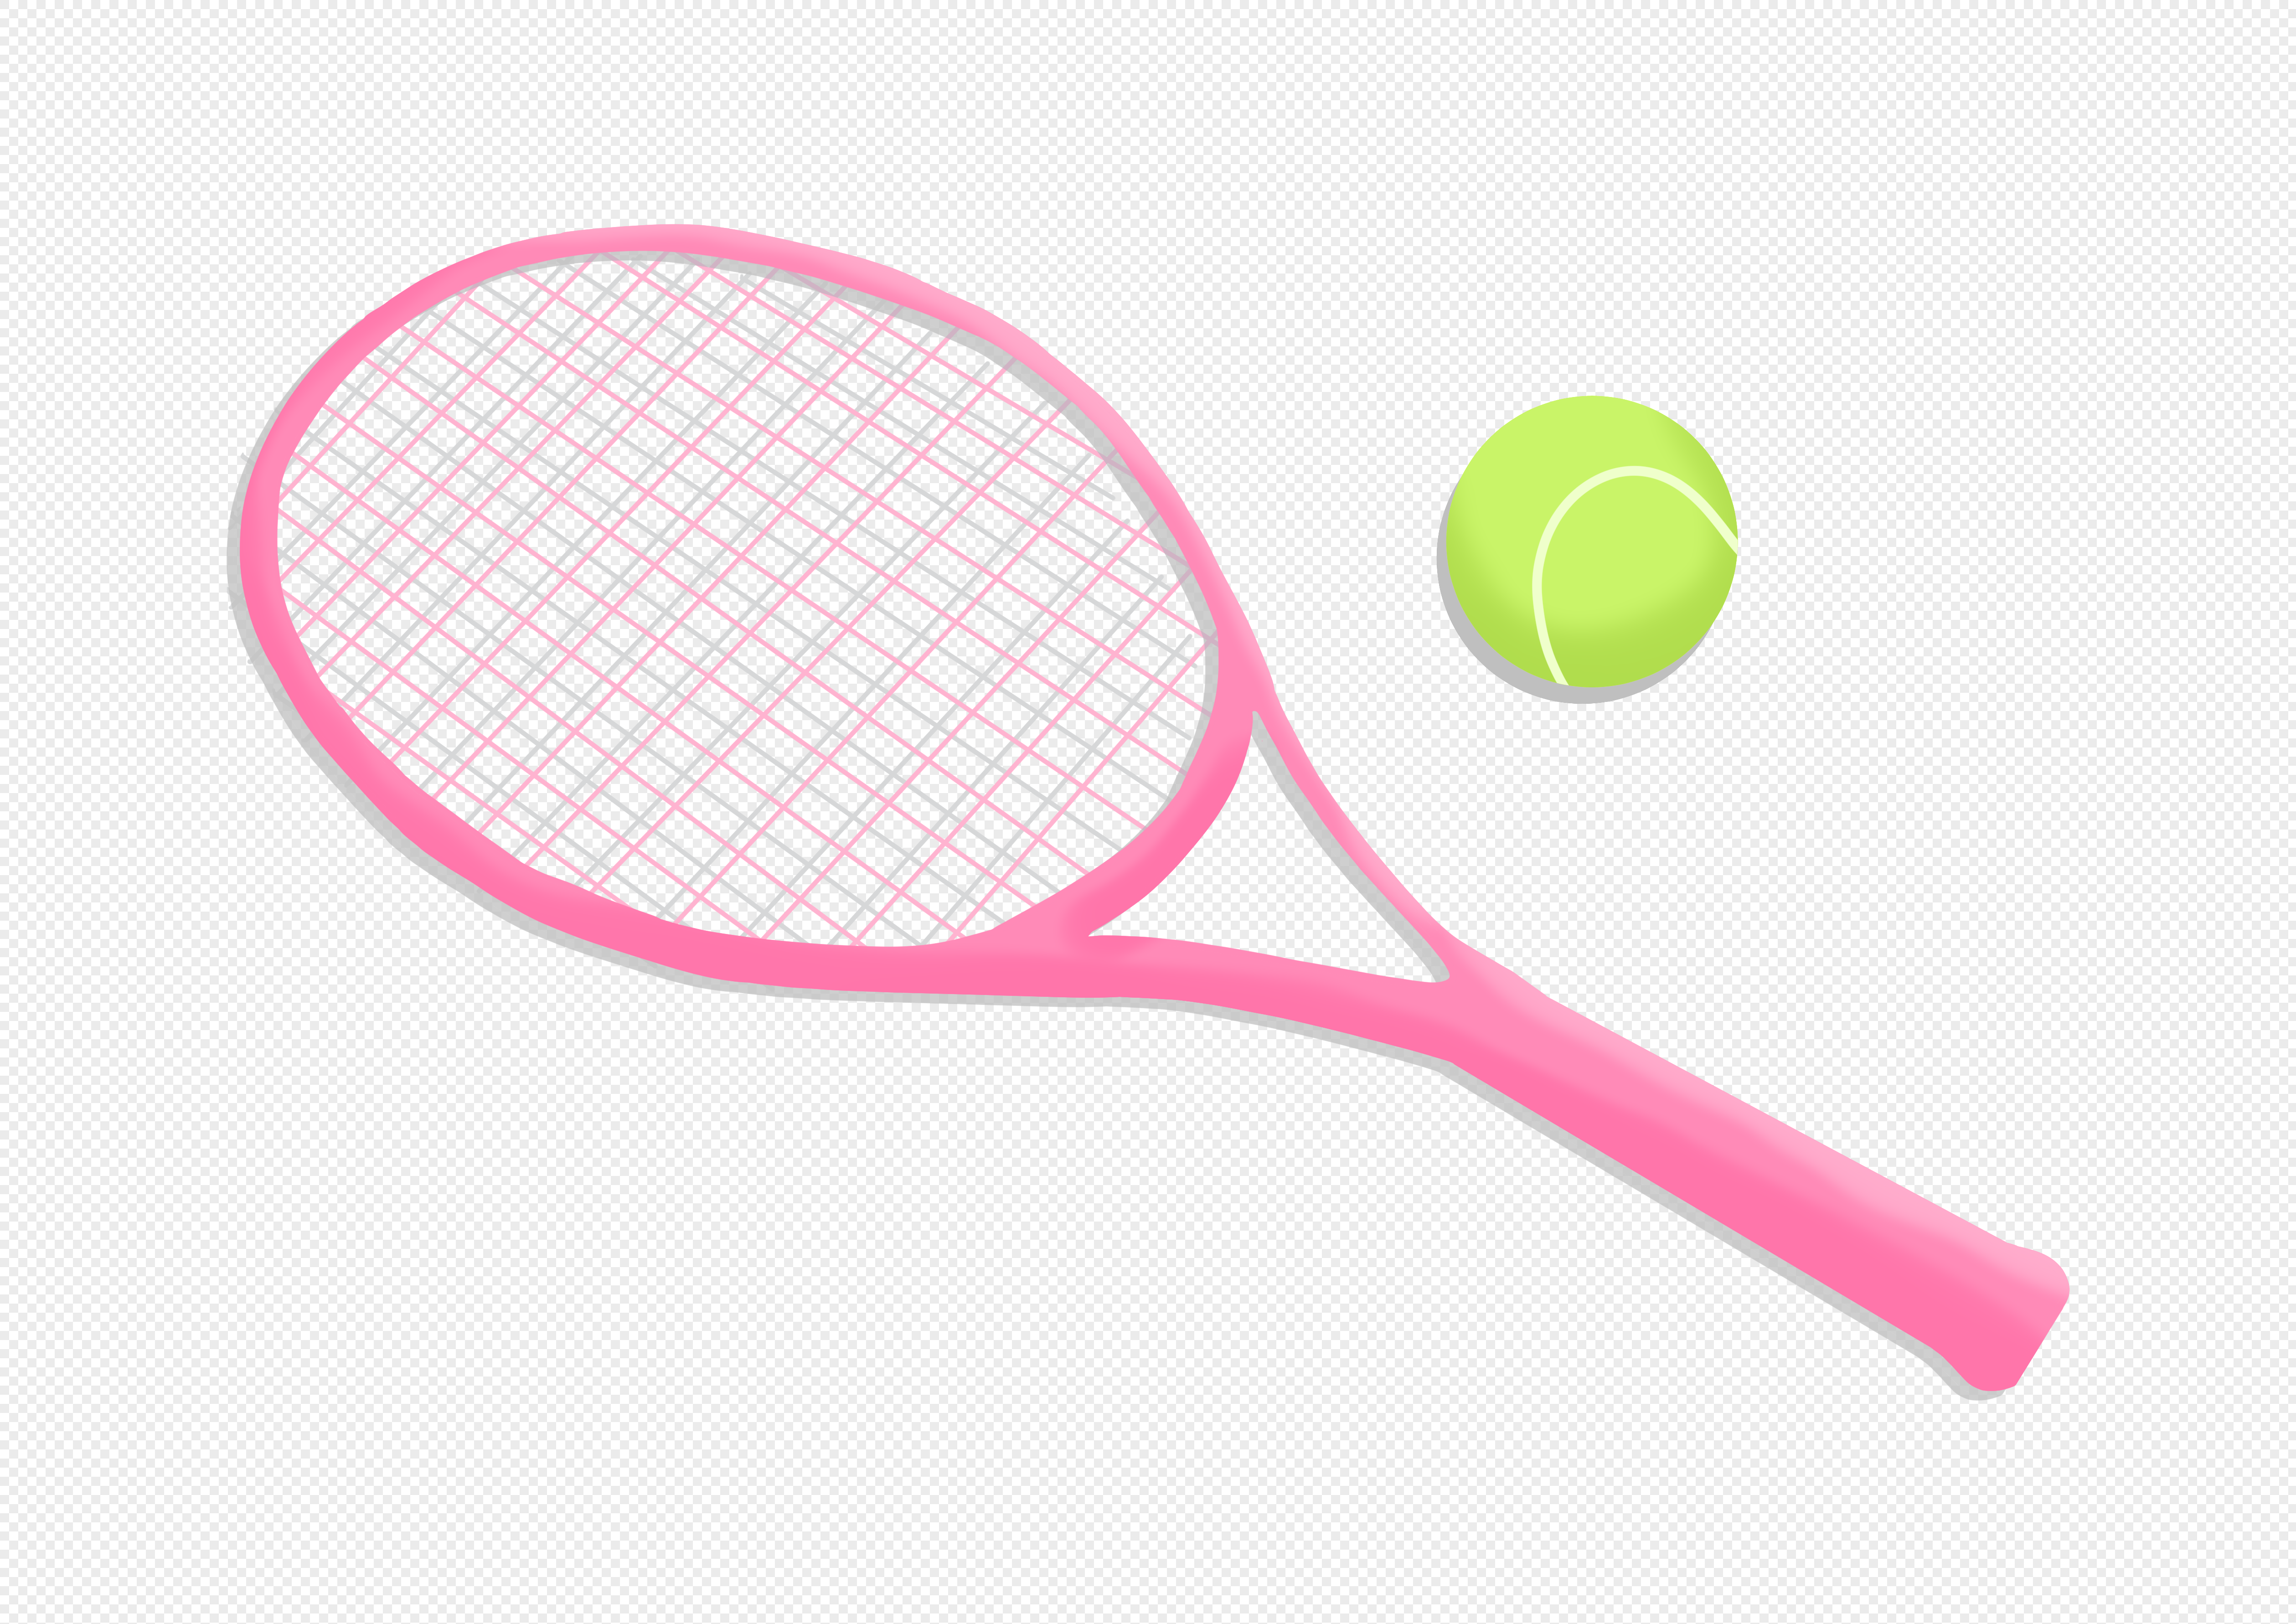 Ракетка для тенниса белая с розовым